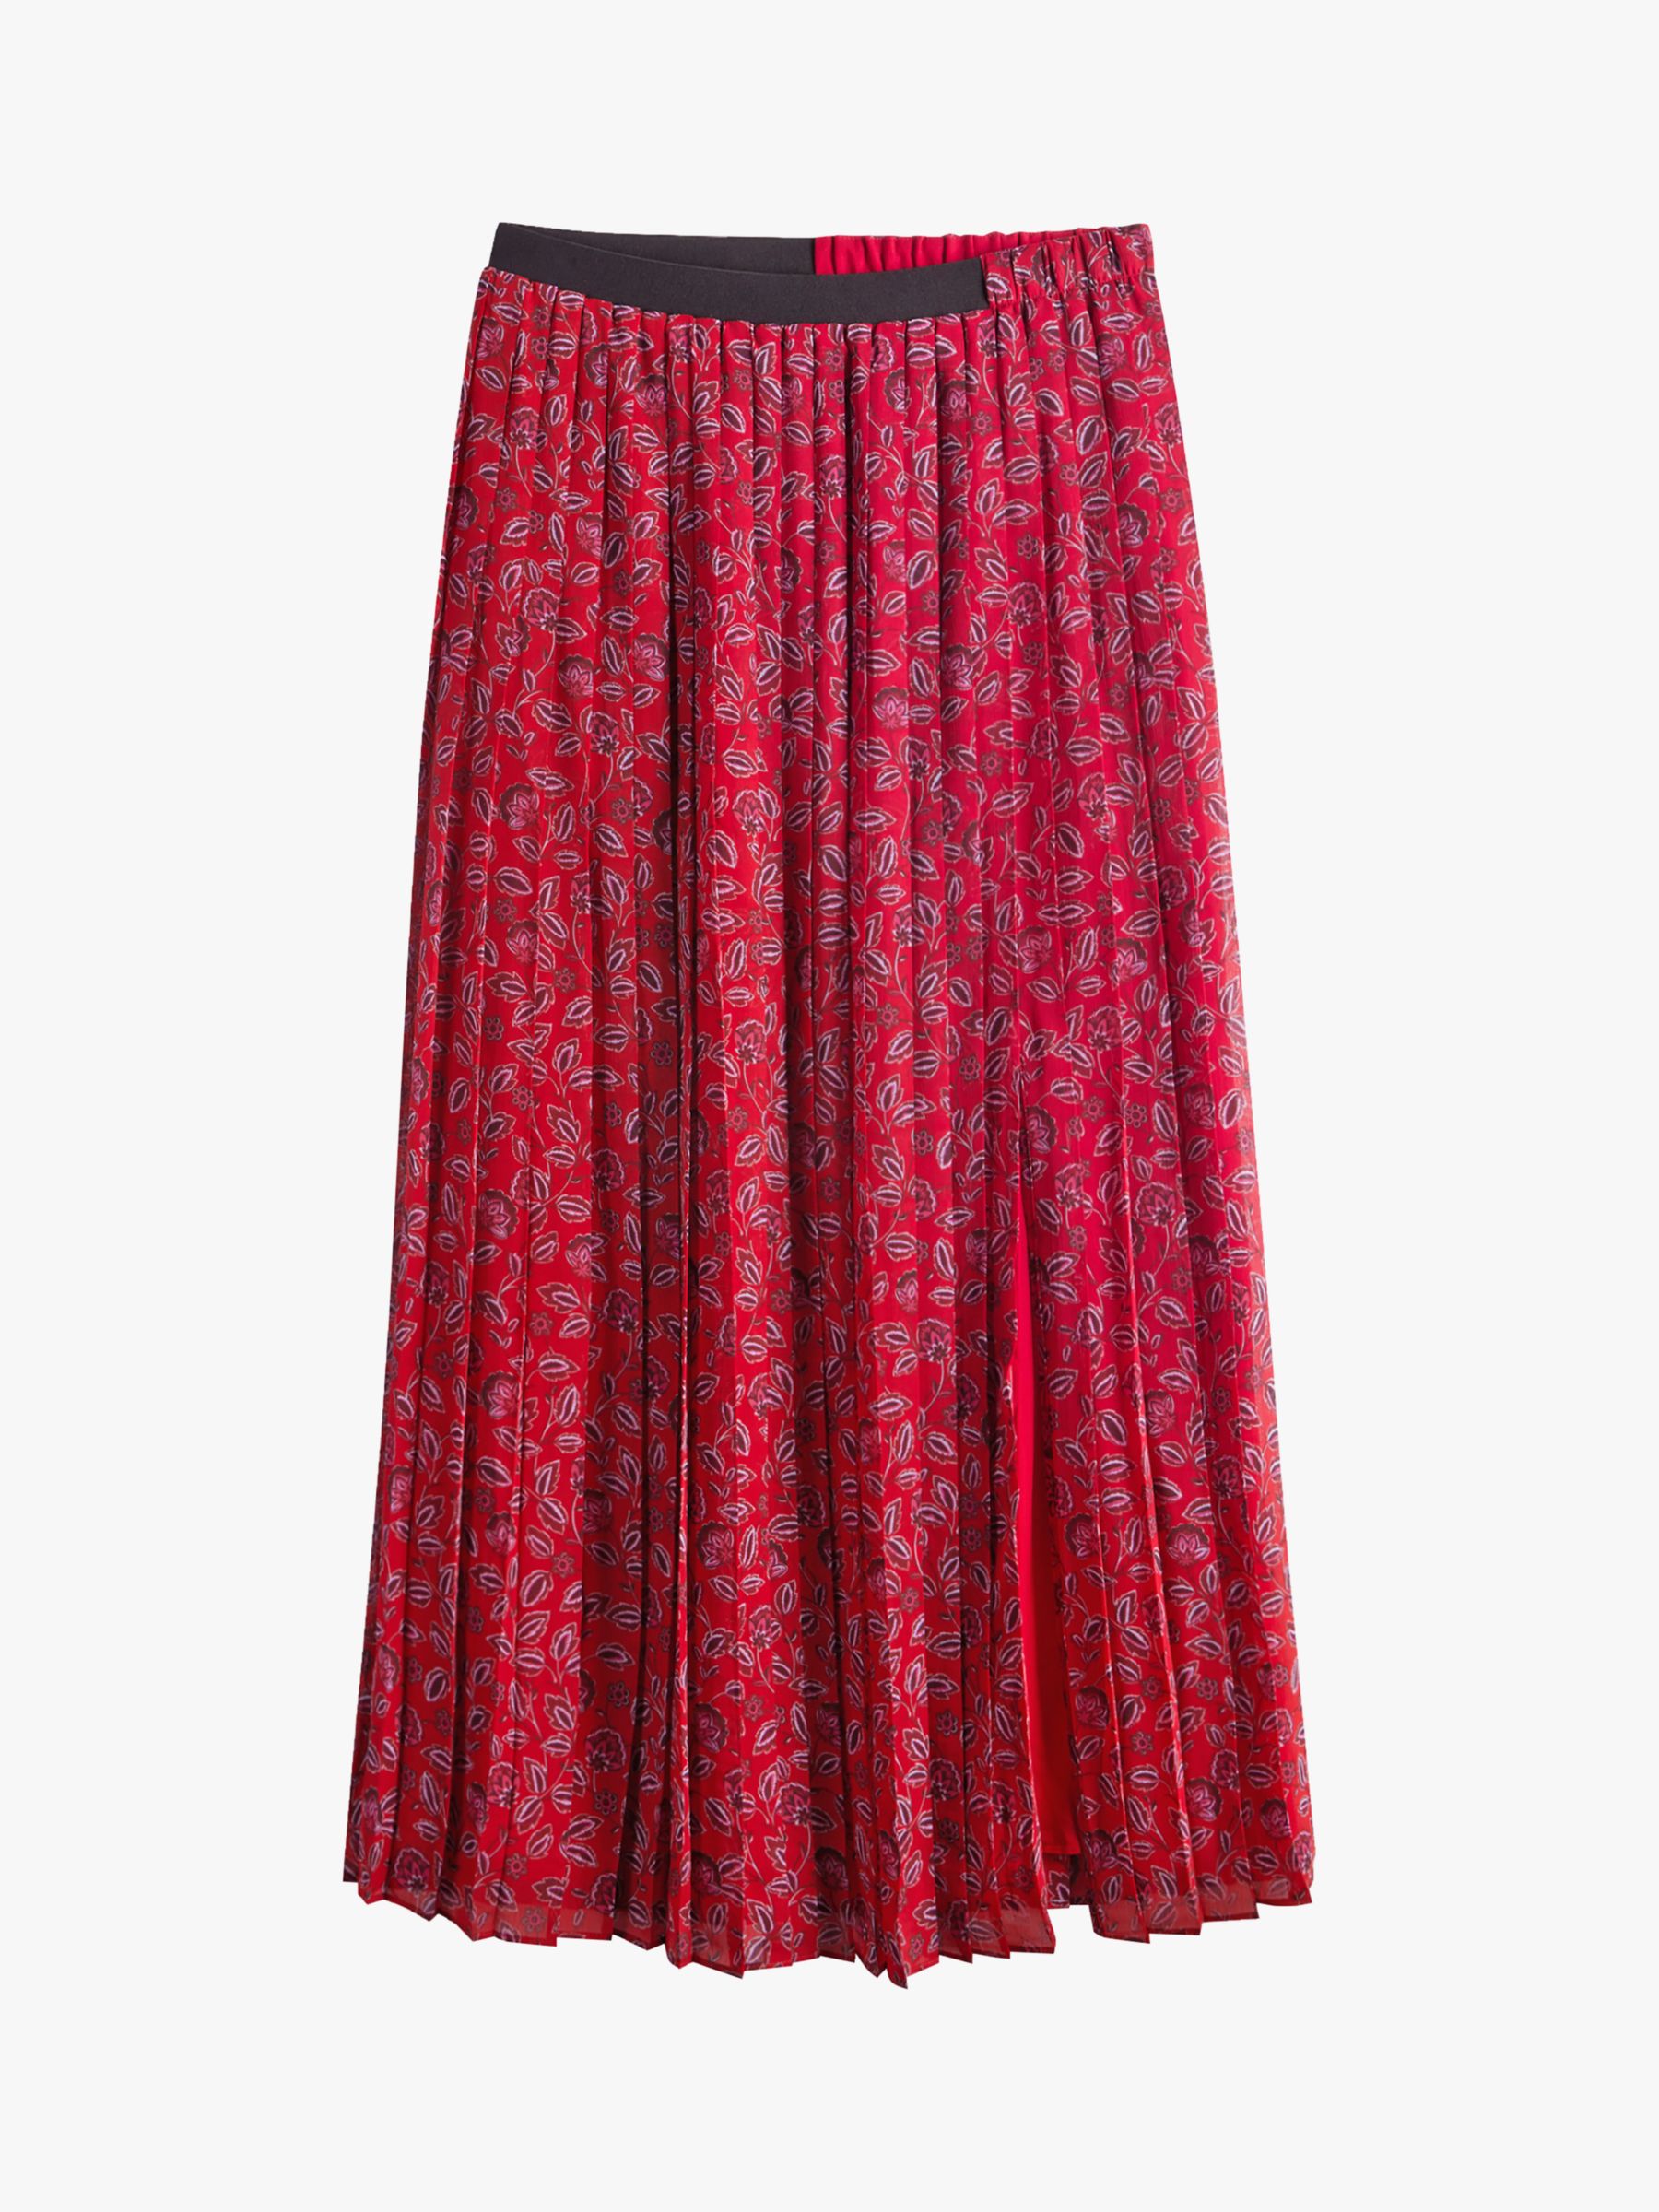 HUSH Hannah Floral Print Pleated Skirt, Multi, 4